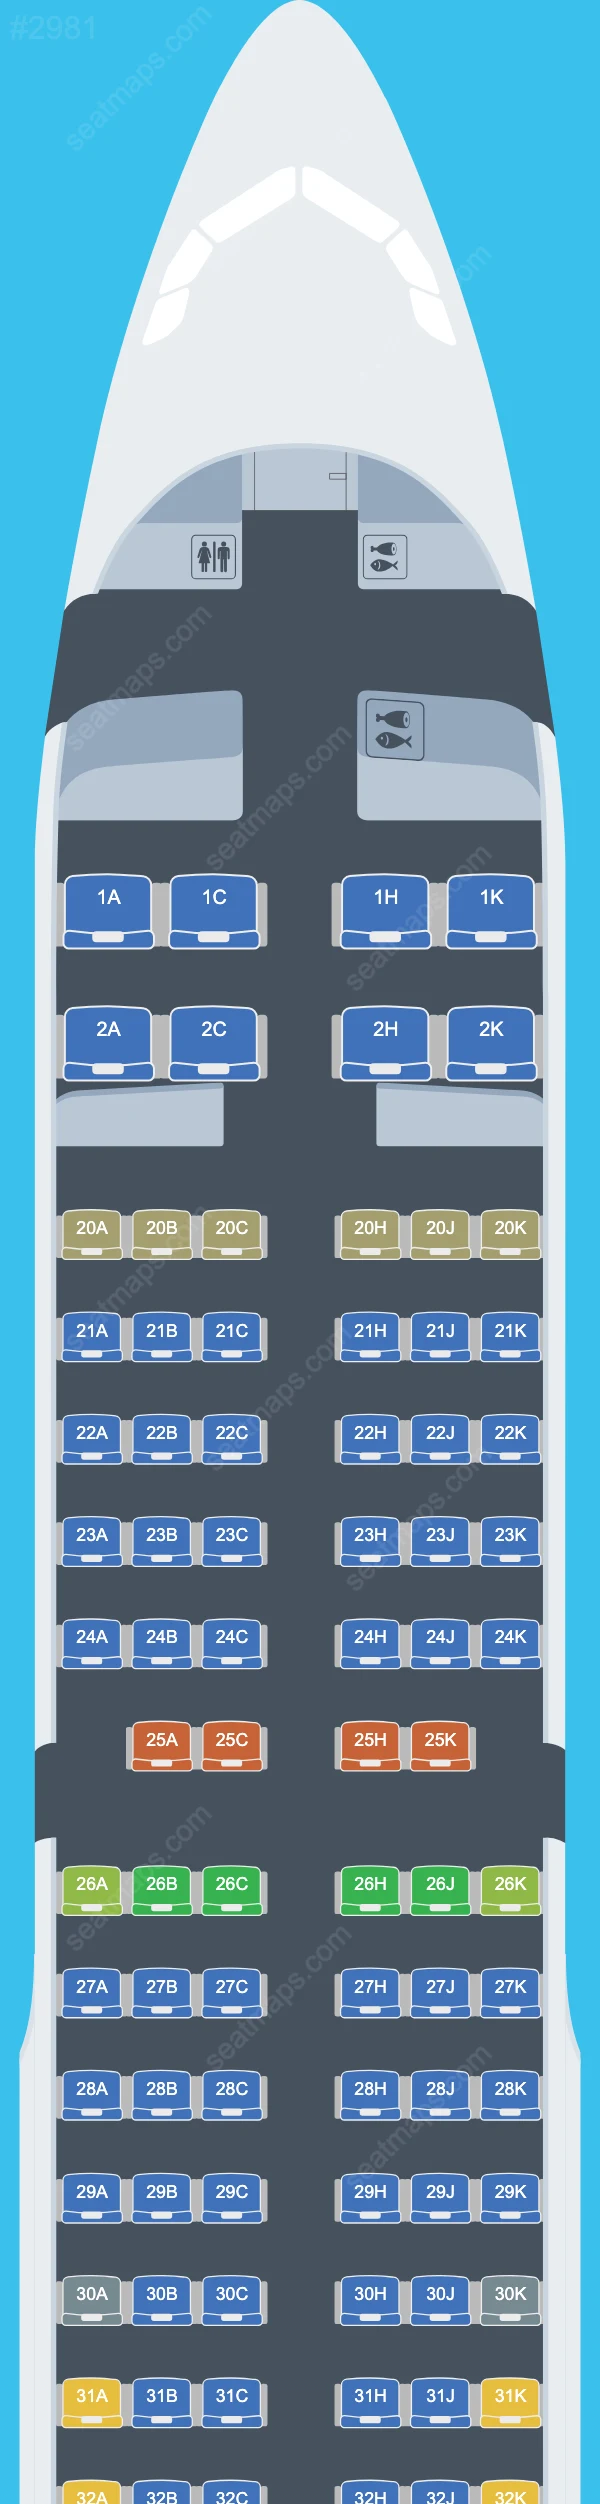 EVA Air Airbus A321 Plan de Salle A321-200